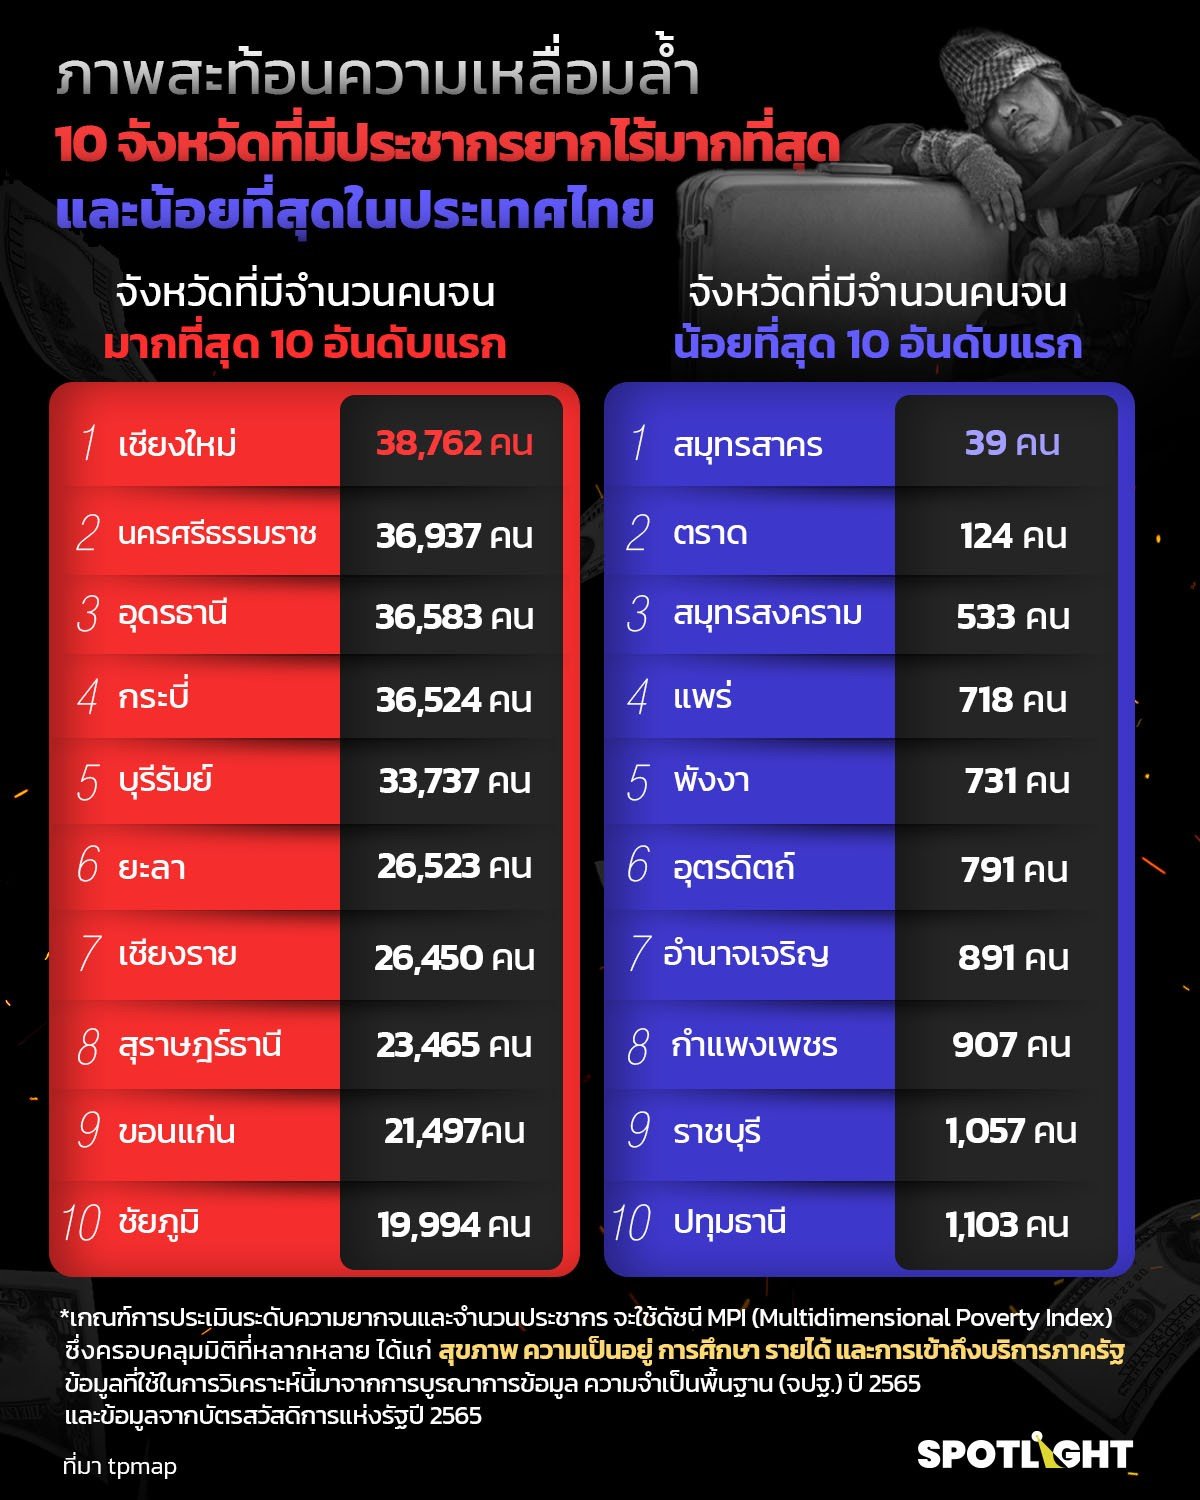 จังหวัดไหนมีคนจนมากที่สุดและน้อยที่สุดในไทย จากฐานข้อมูล TPMAP